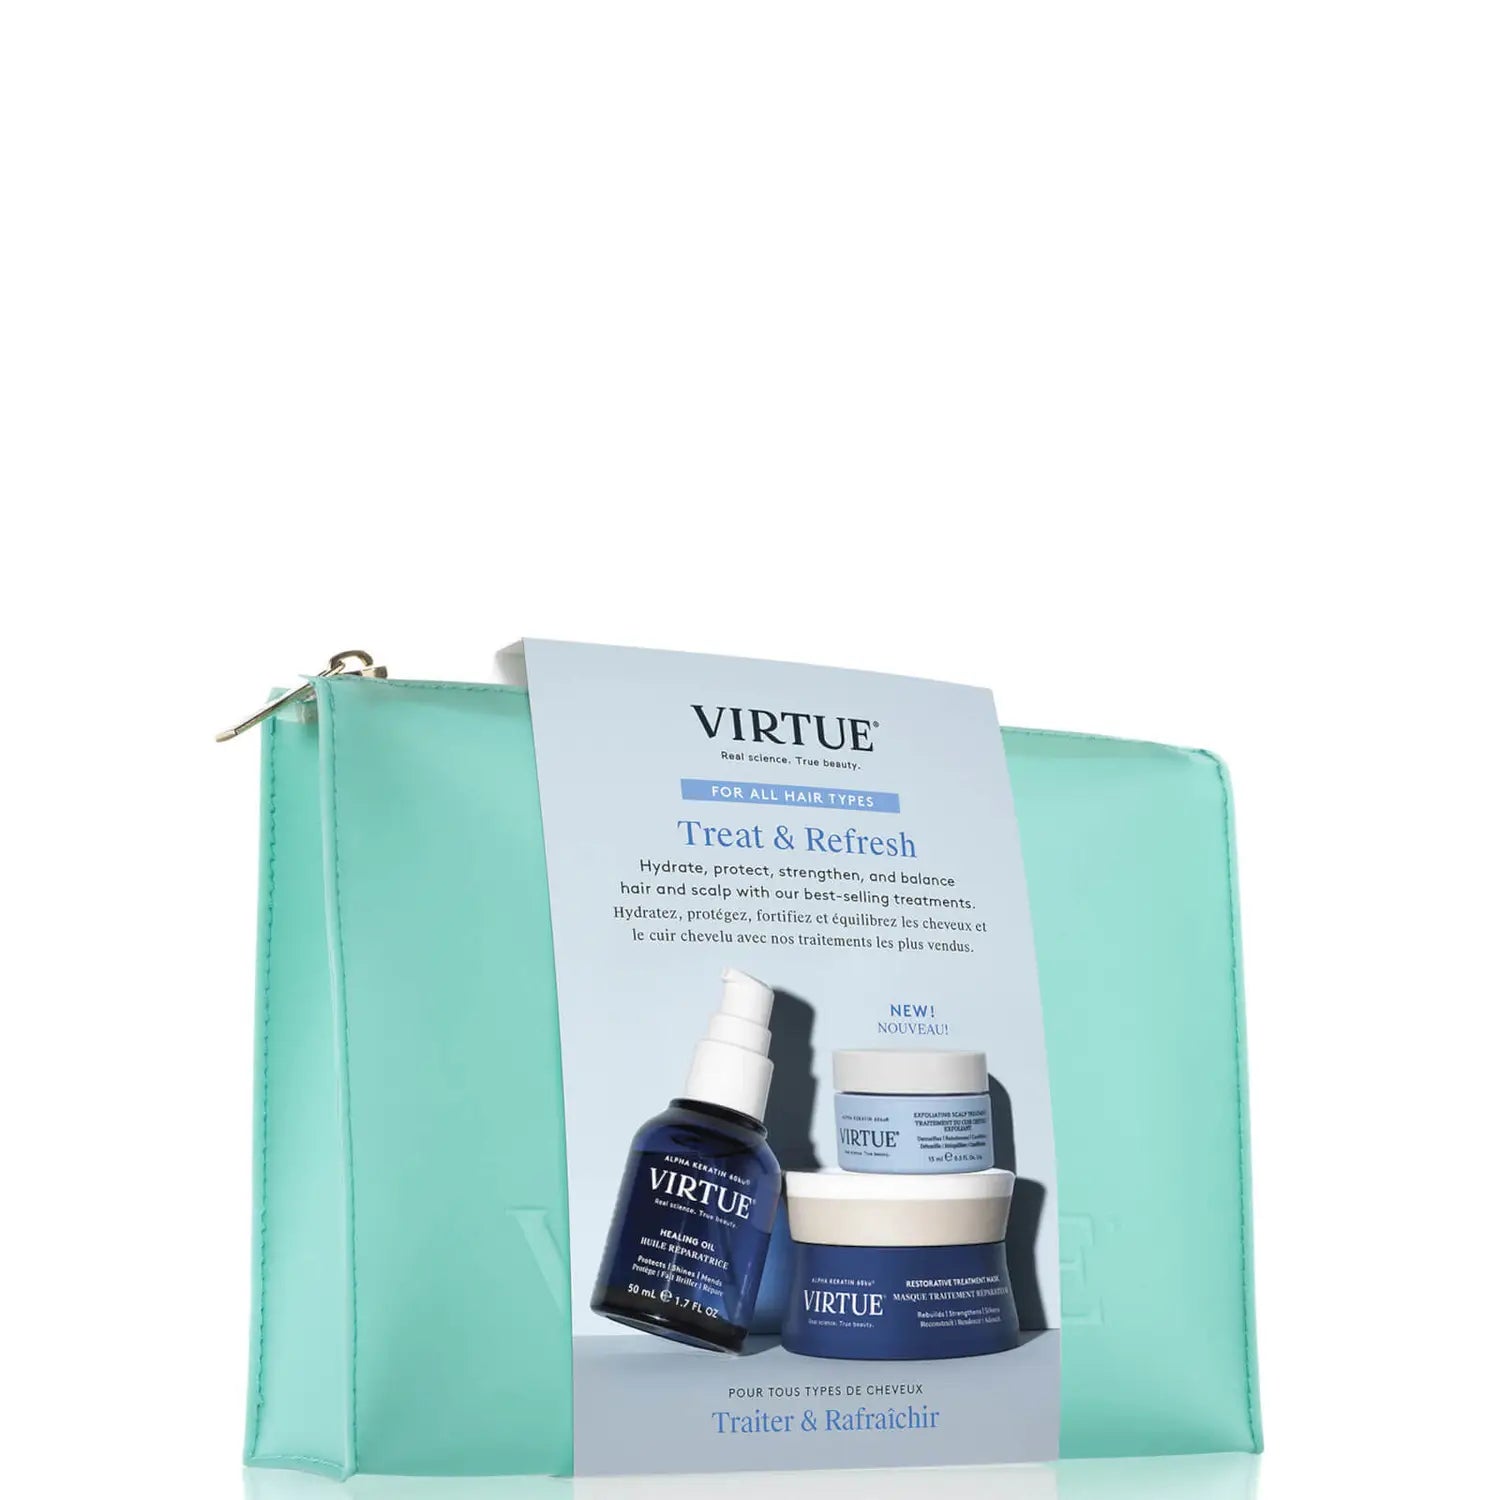 Virtue Fresh Start Summer Hair Kit